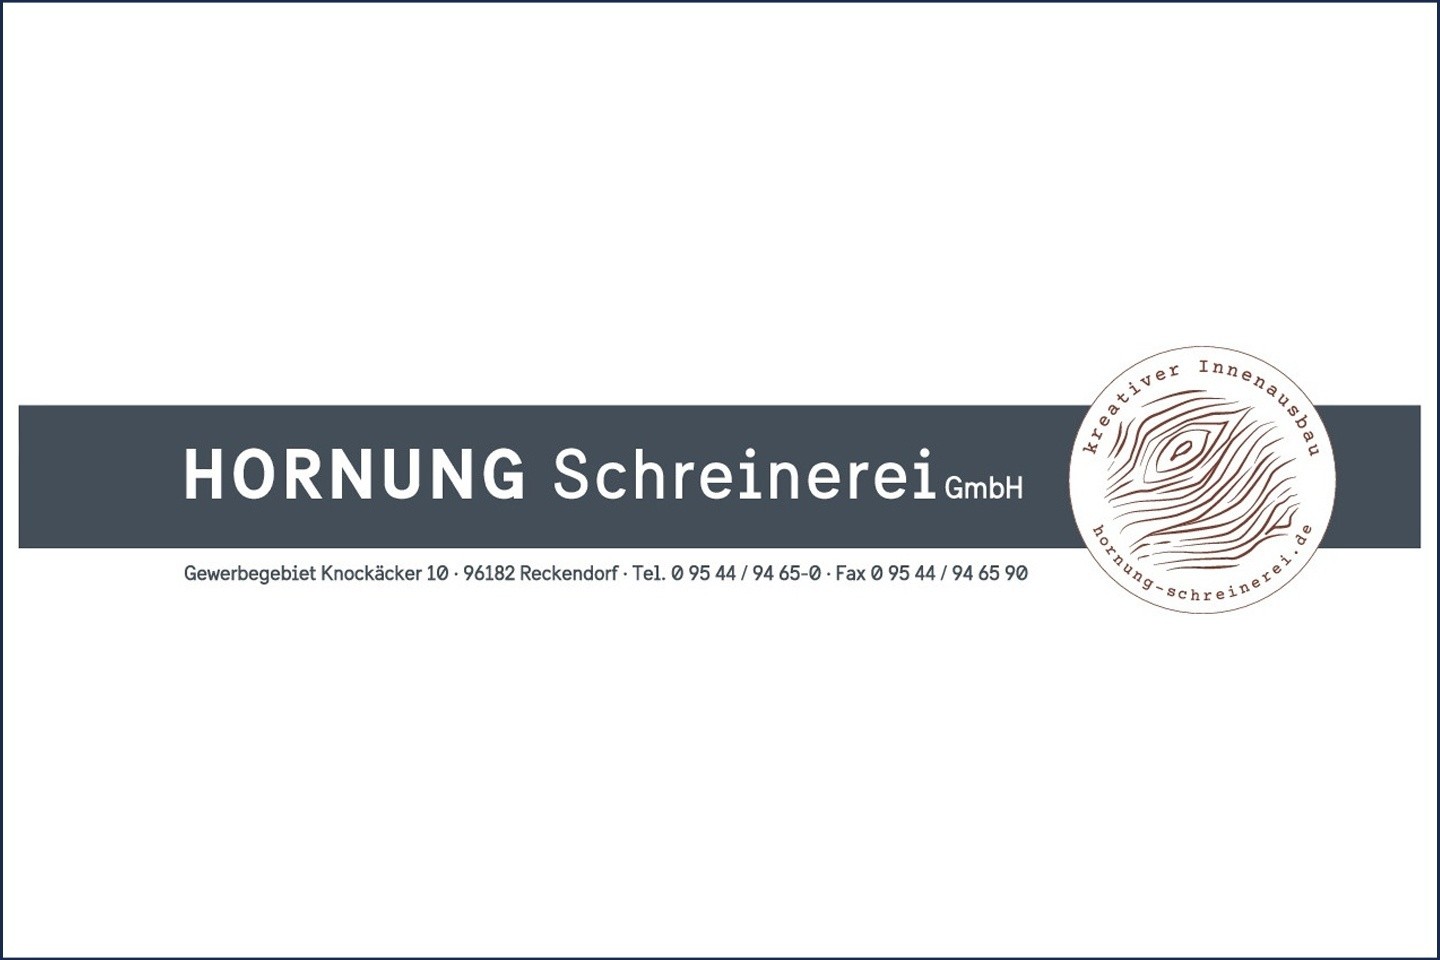 Hornung Schreinerei Gmbh 100 Bamberg Unternehmen Einkaufsvorteile Veranstaltungen Nachrichten Service Jobs